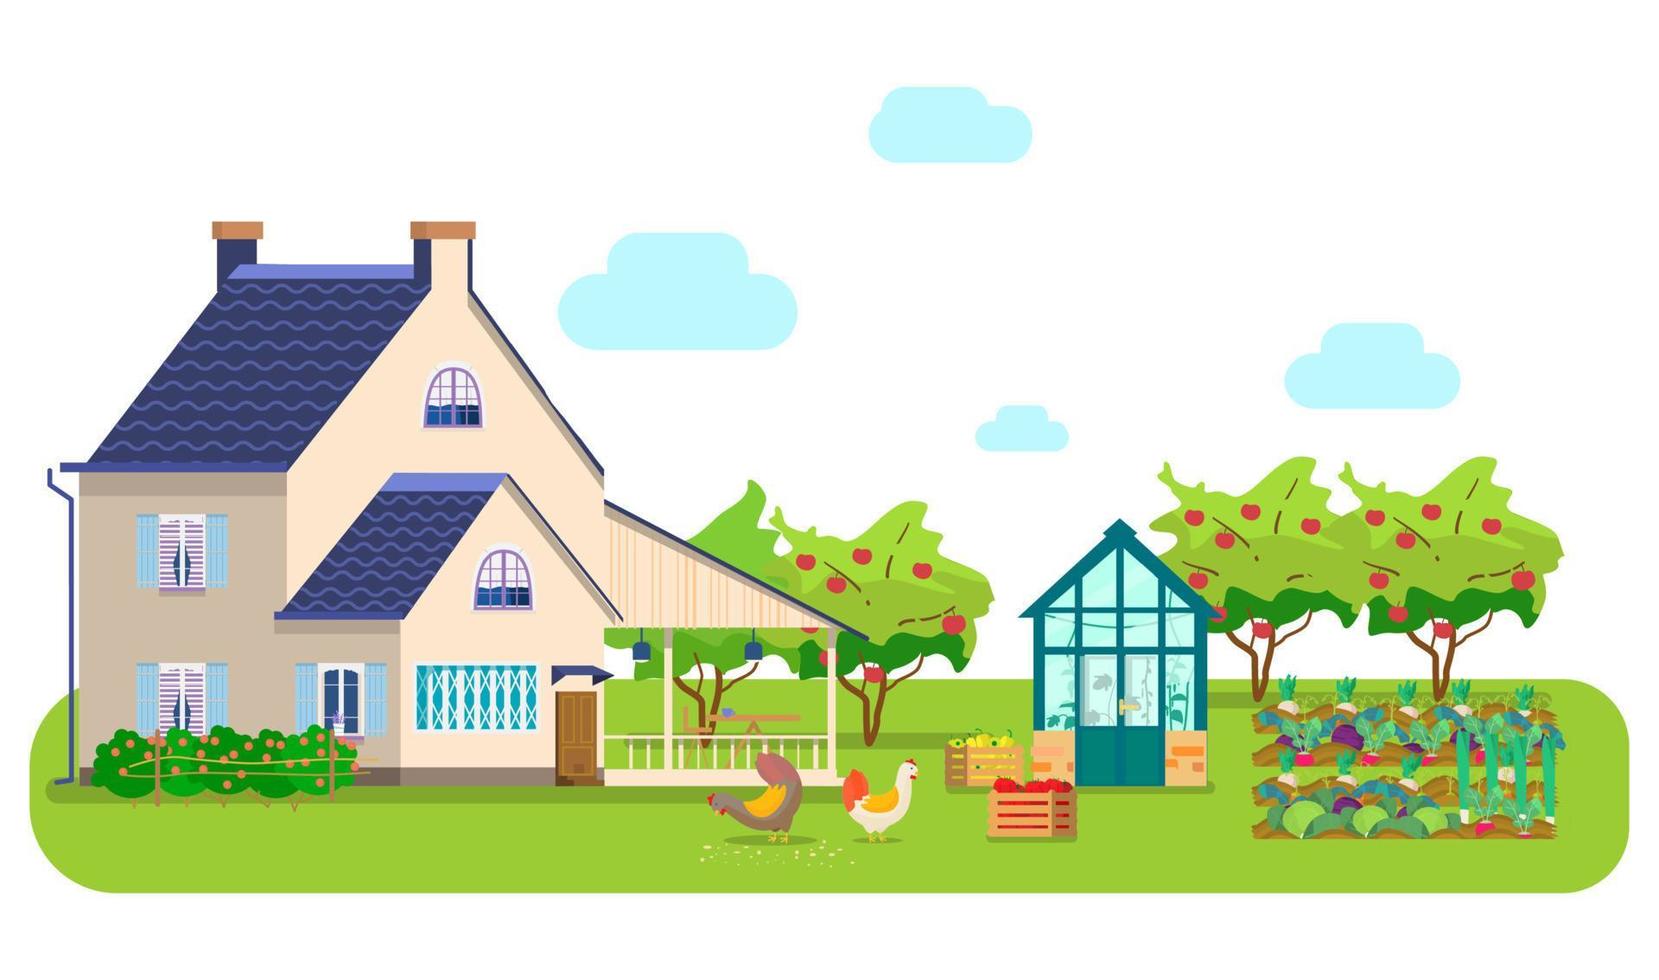 vectorillustratie van platteland scène. landhuis, serre, kippen die graan pikken, houten kisten met groenten, groentebedden, appelboomgaard. vector